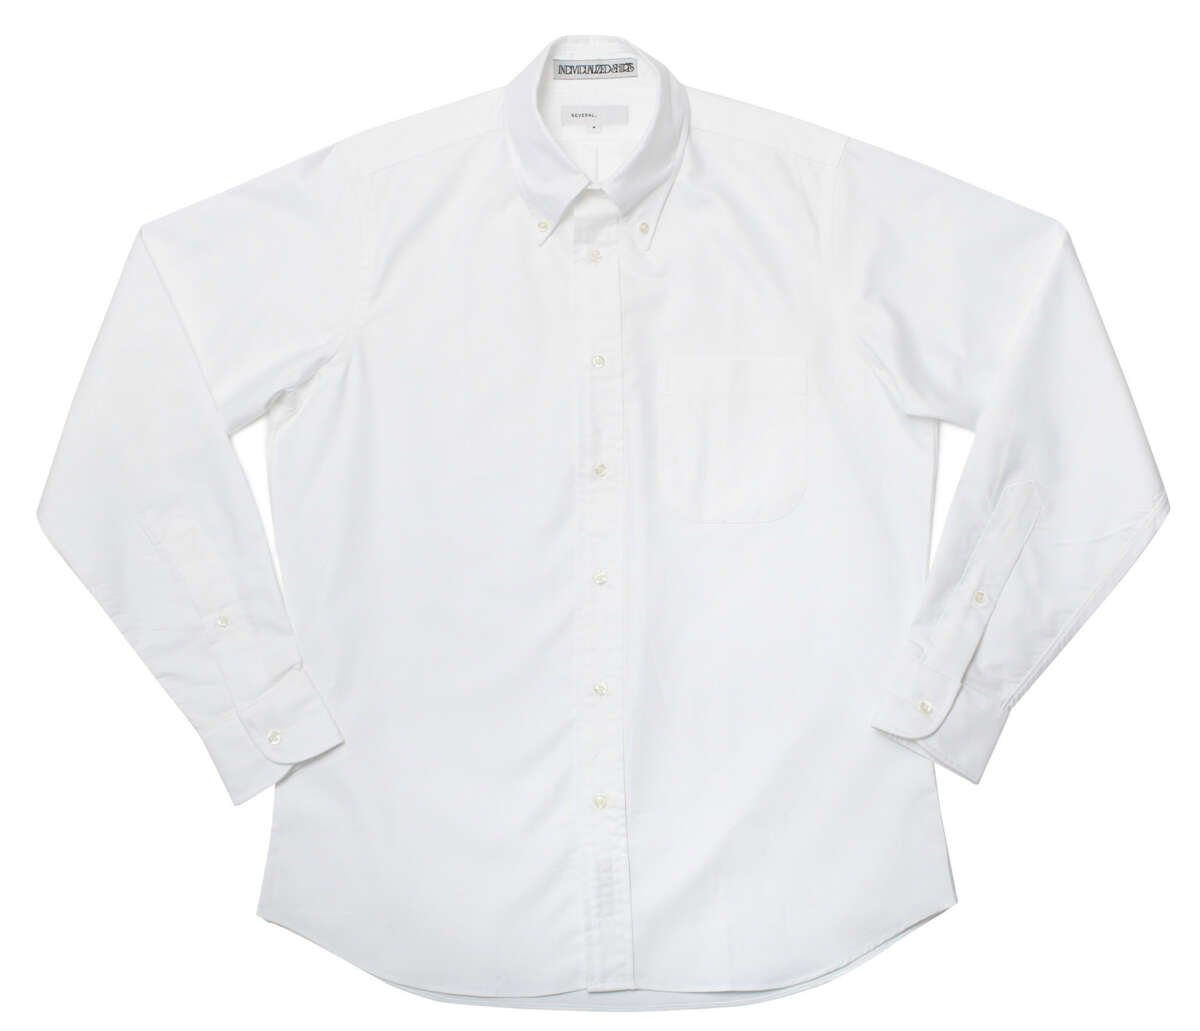 Andrew Wyeth’s American Wardrobe | Epochs Menswear